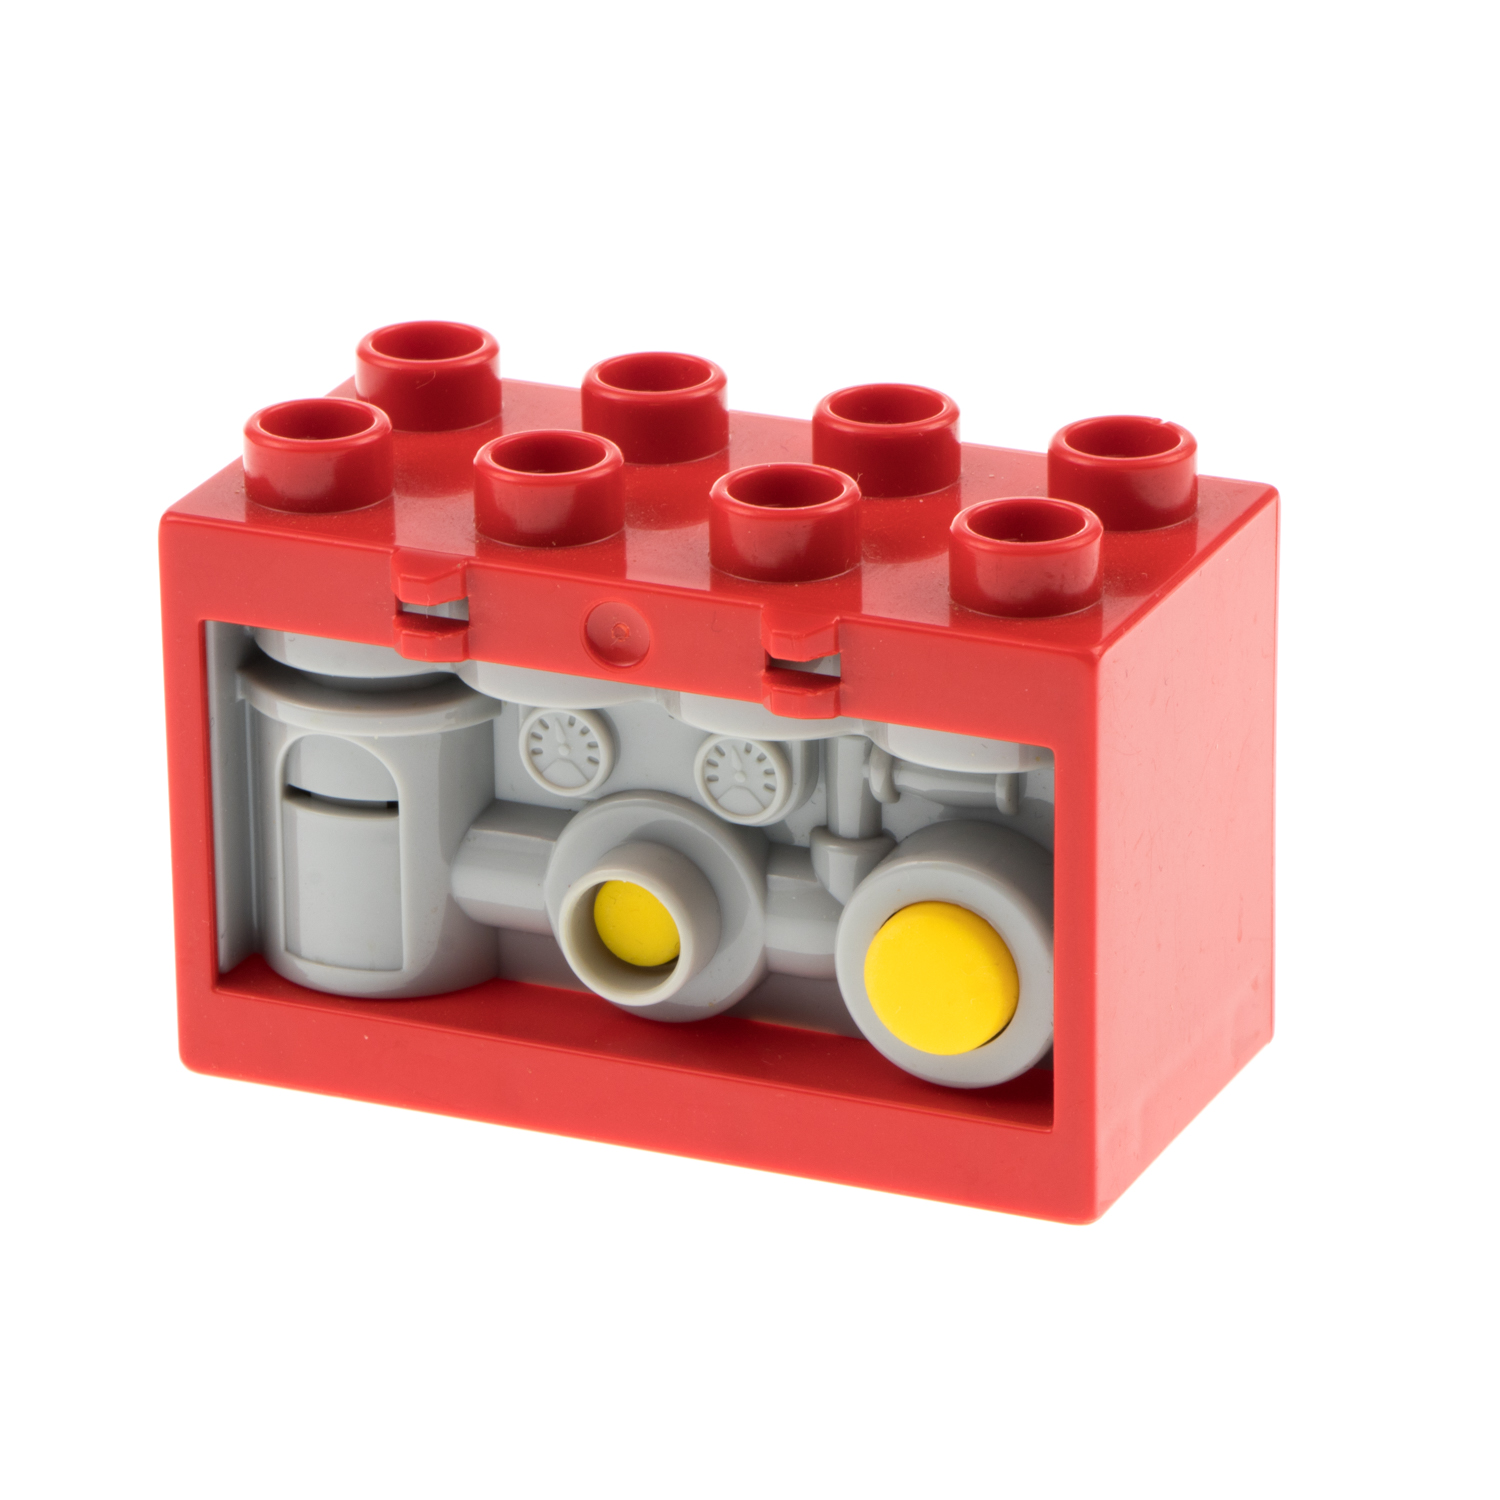 1x Lego Duplo kiste für feuerwehr mit Funktion geräuche 